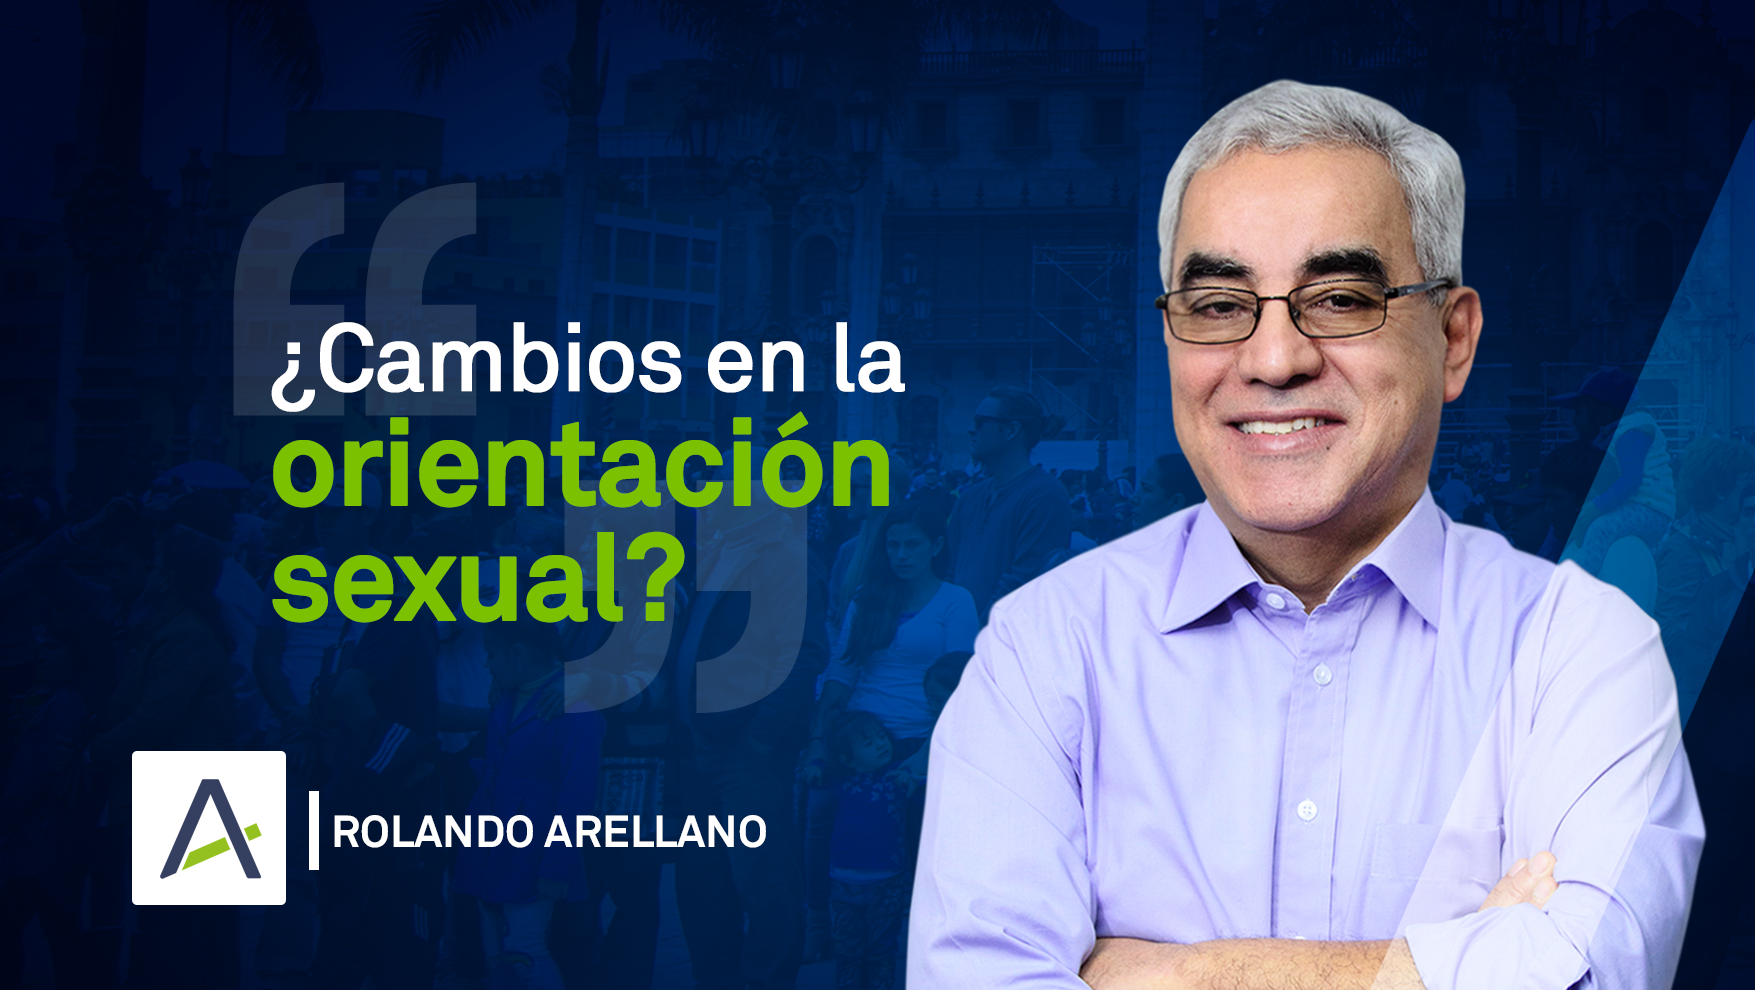 Rolando Arellano 13-05-19